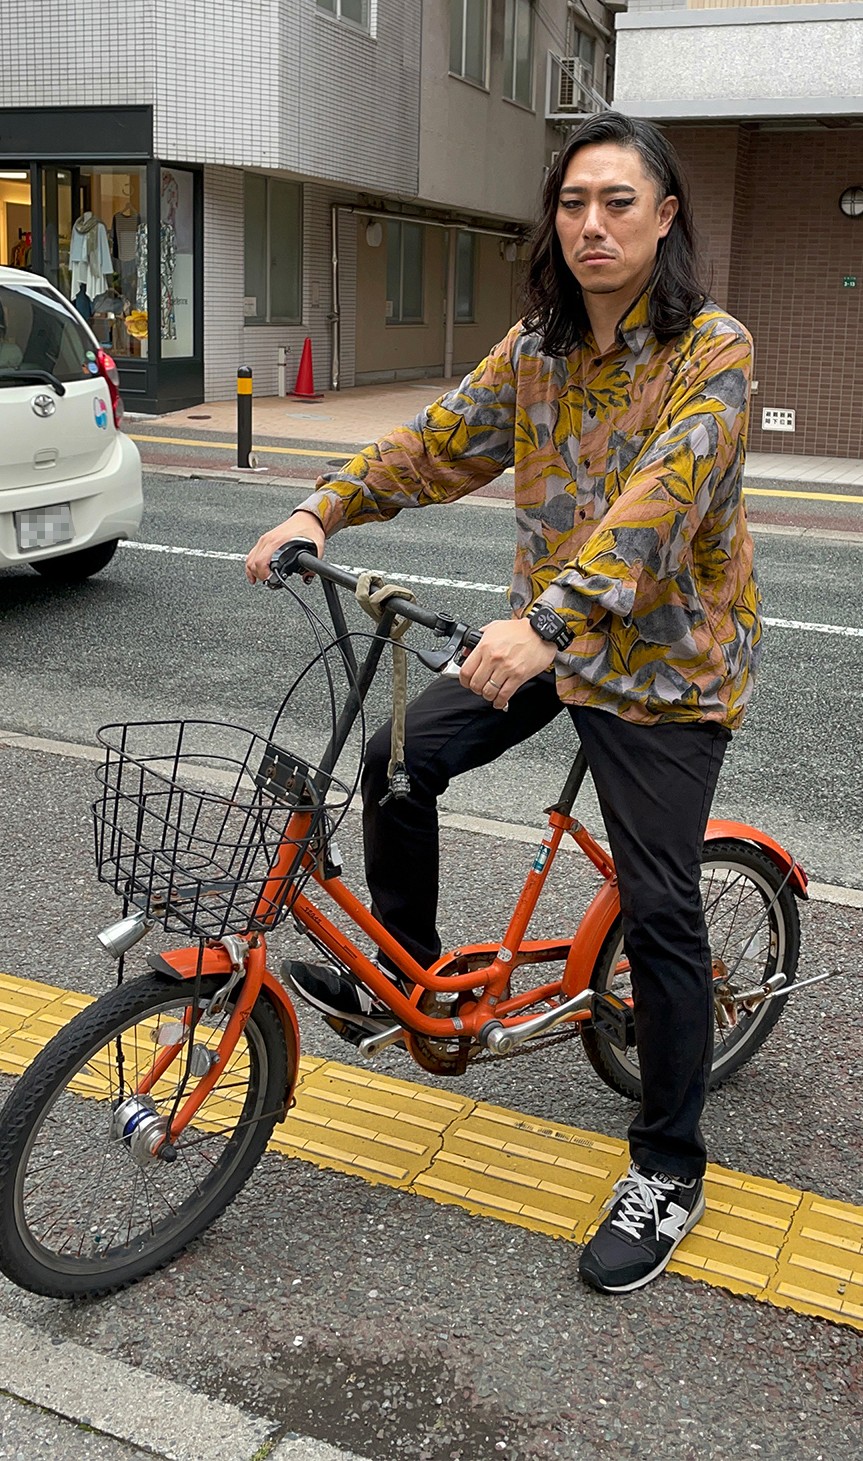 「フラワーボーイ」カットの妖艶なメイクのまま街中でオレンジの自転車にまたがる今村。